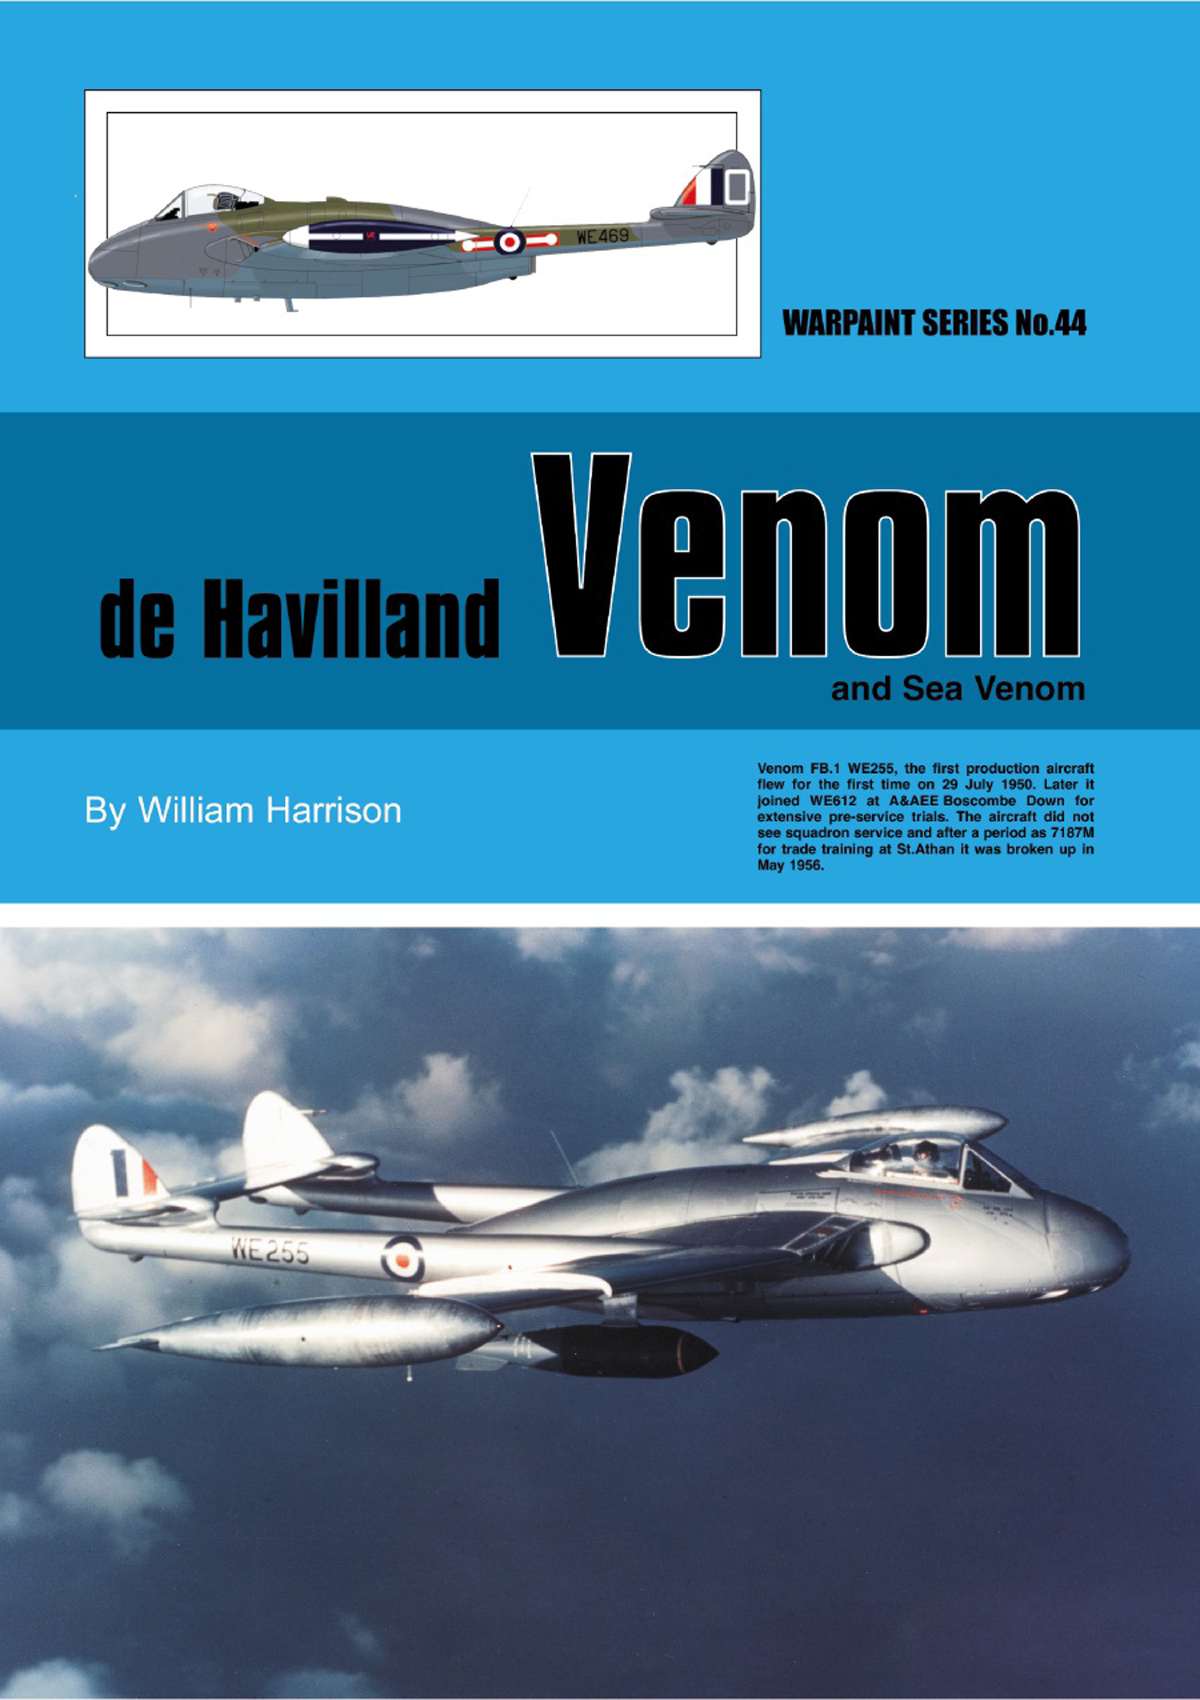 N44 - De Havilland Venom & Sea Venom